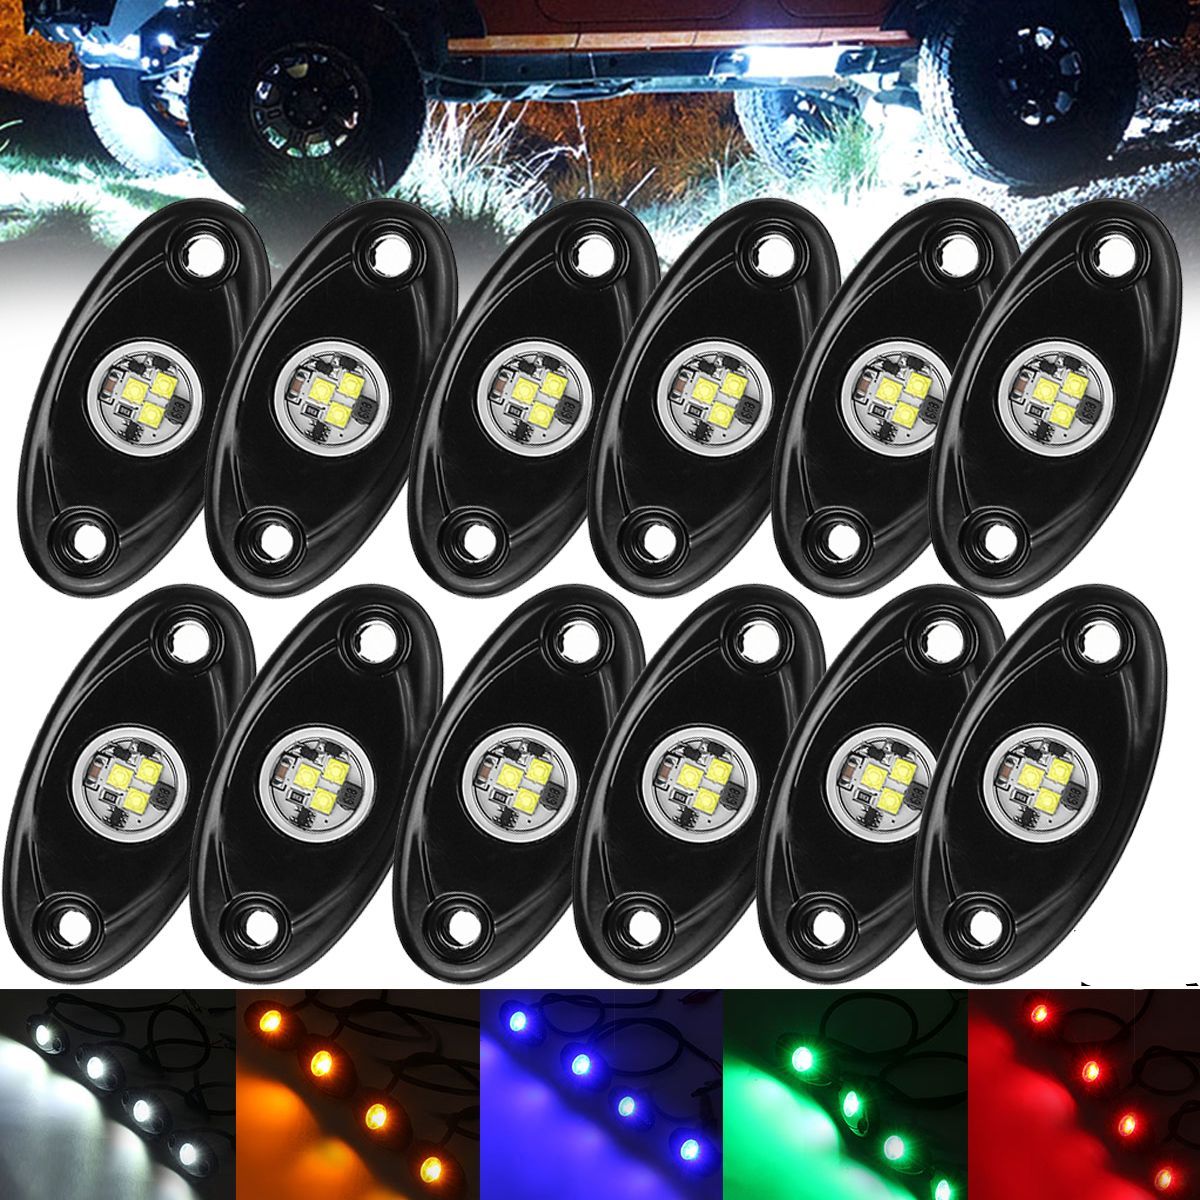 12Pcs-LED-Deck-Bottom-Lights-Atmosphere-Decoration-Lamps-Offroad-Car-Truck-Boat-Camper-SUV-6000K-Wat-1608002